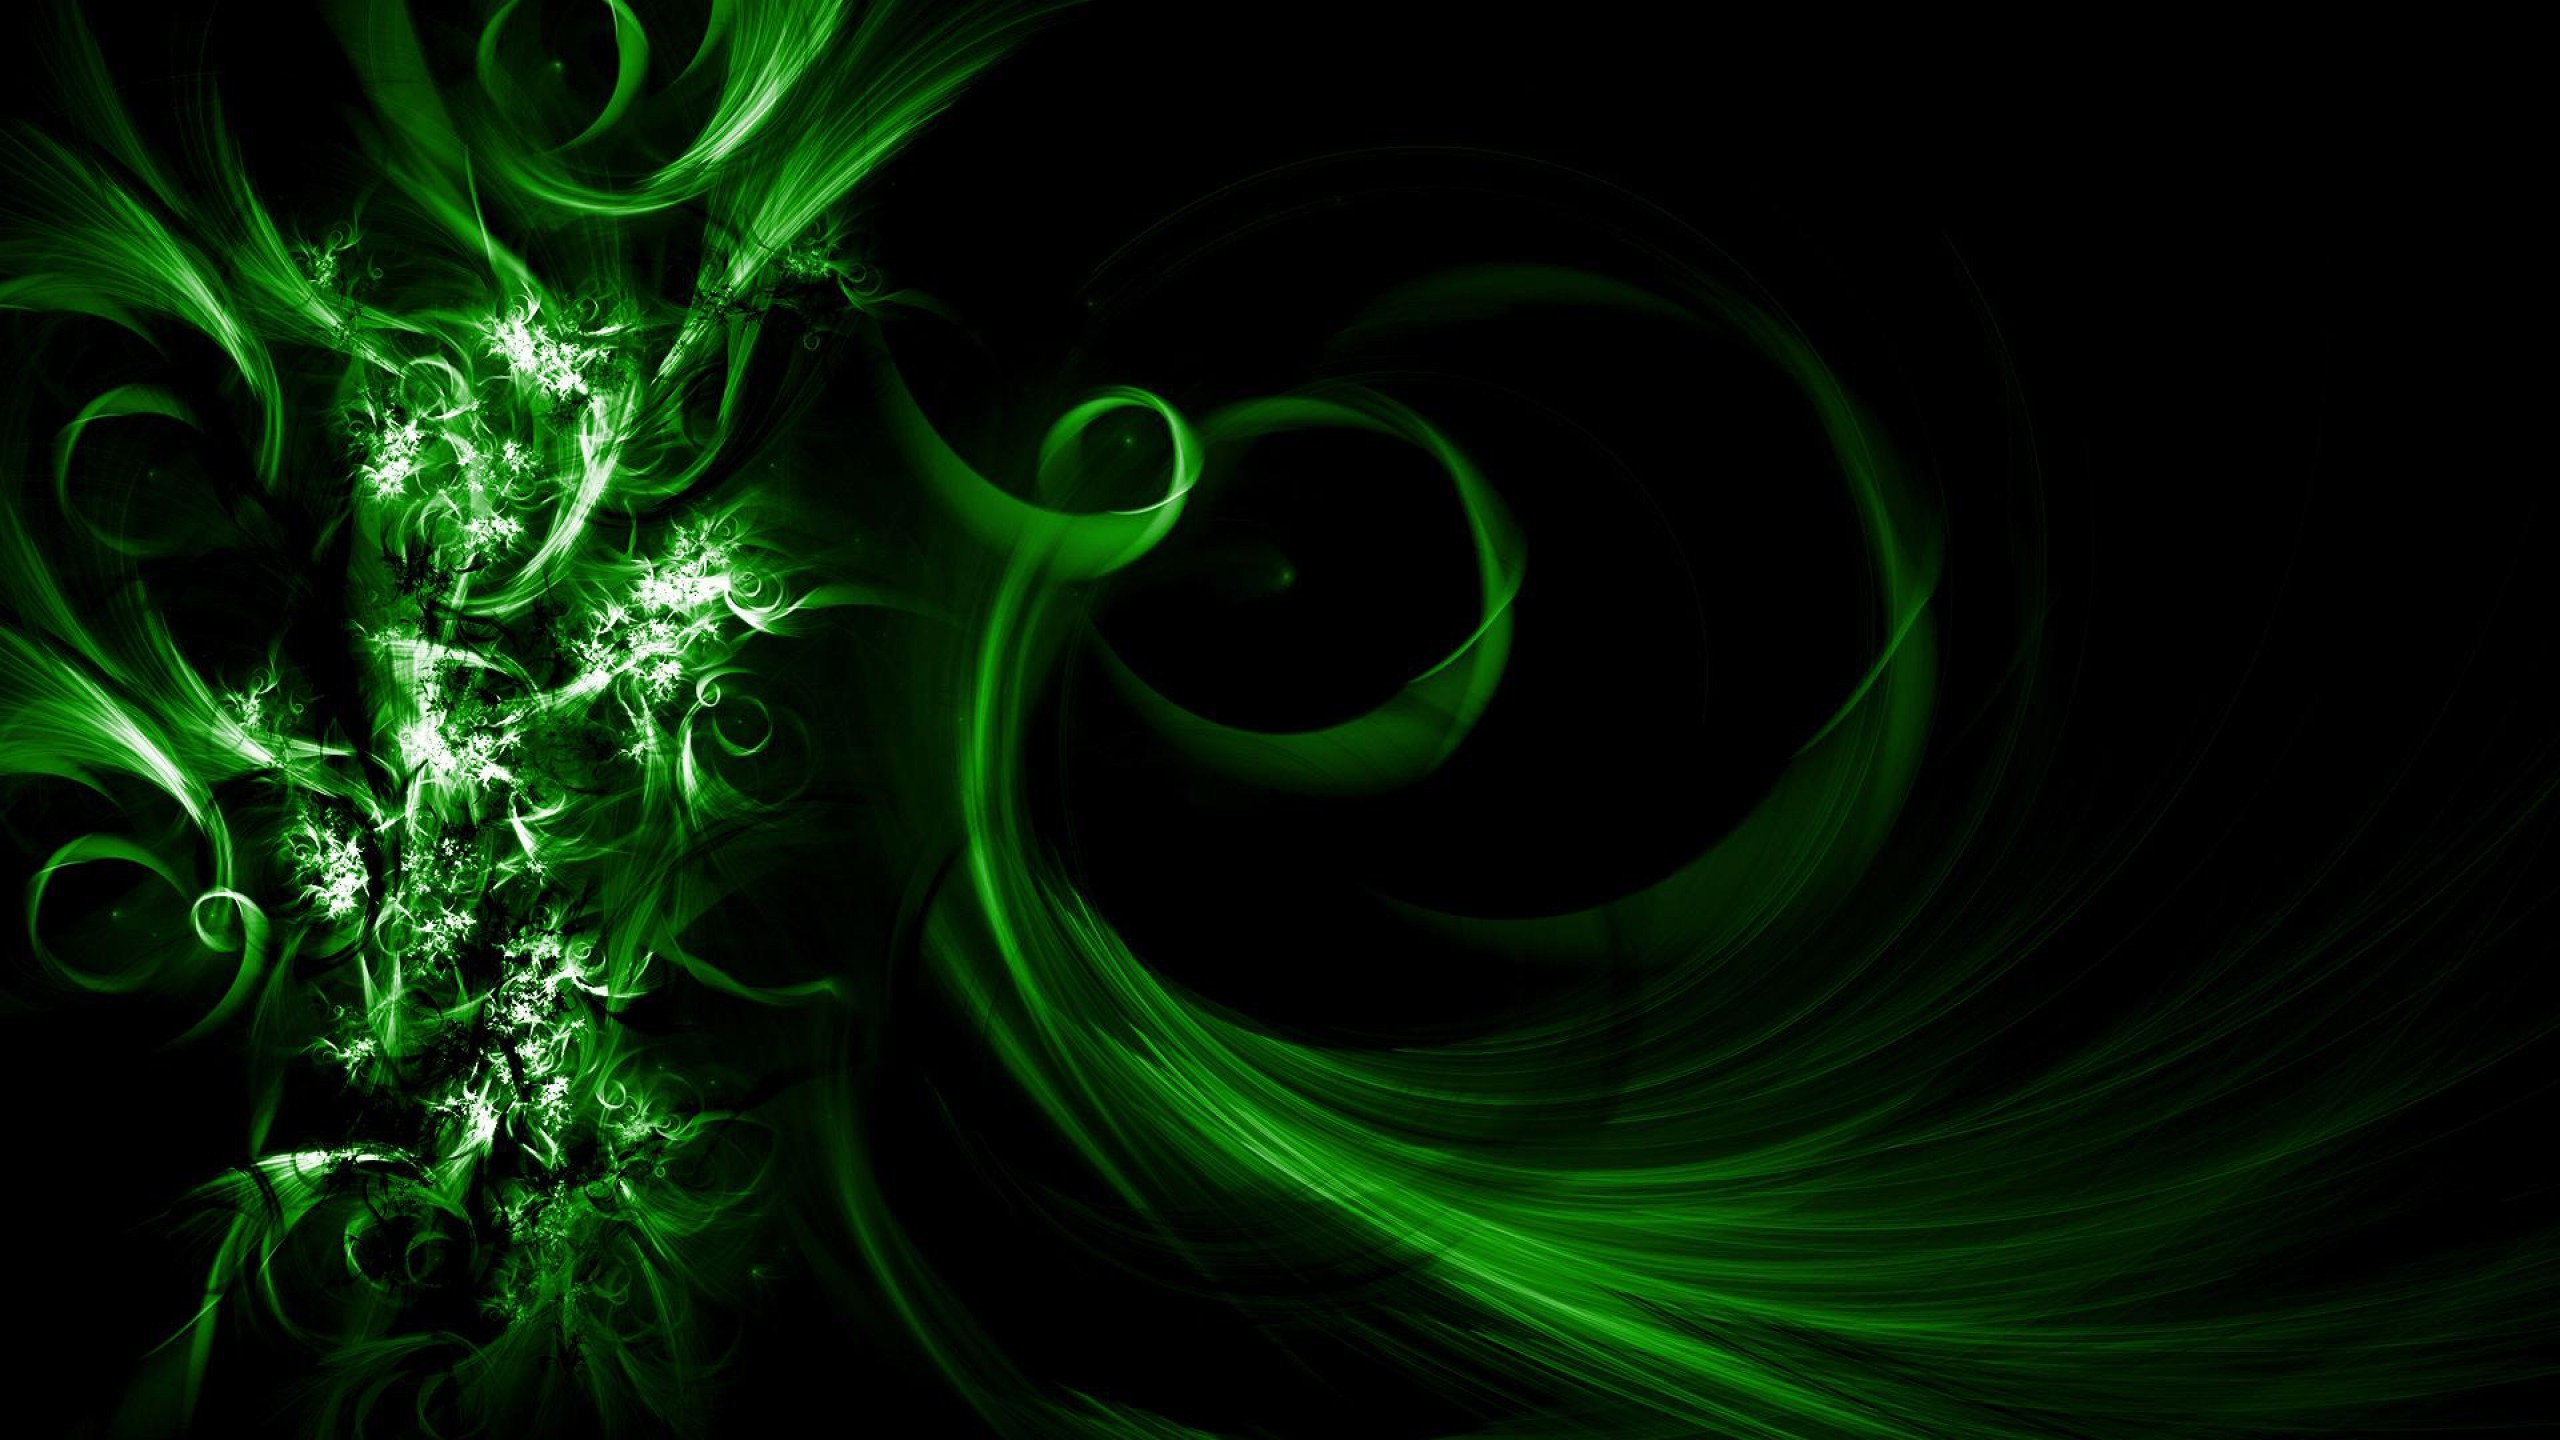 fondos oscuros frescos,verde,ligero,arte fractal,agua,diseño gráfico